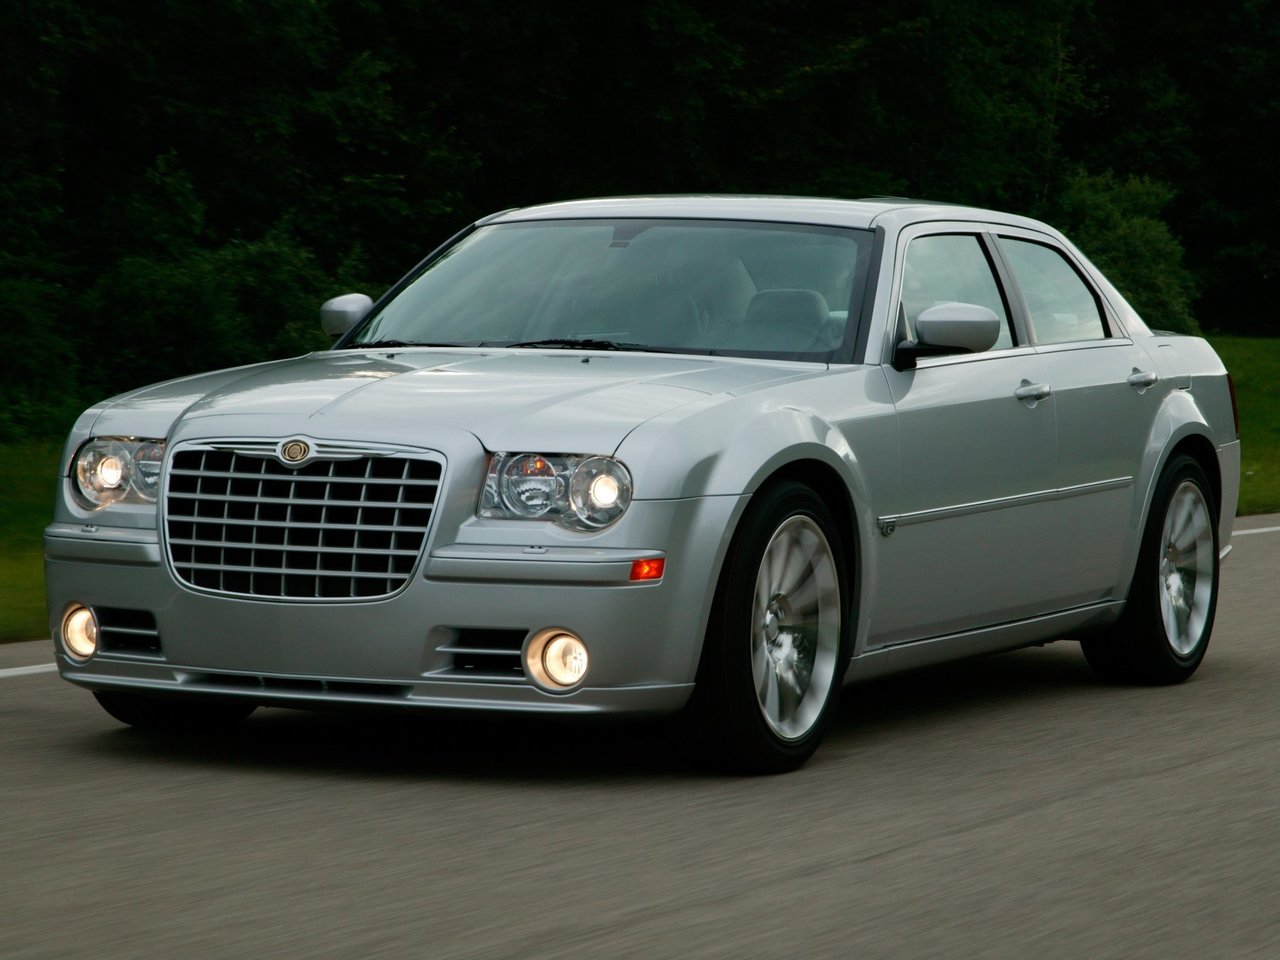 Расход газа одной комплектации седана SRT8 Chrysler 300C. Разница стоимости заправки газом и бензином. Автономный пробег до и после установки ГБО.